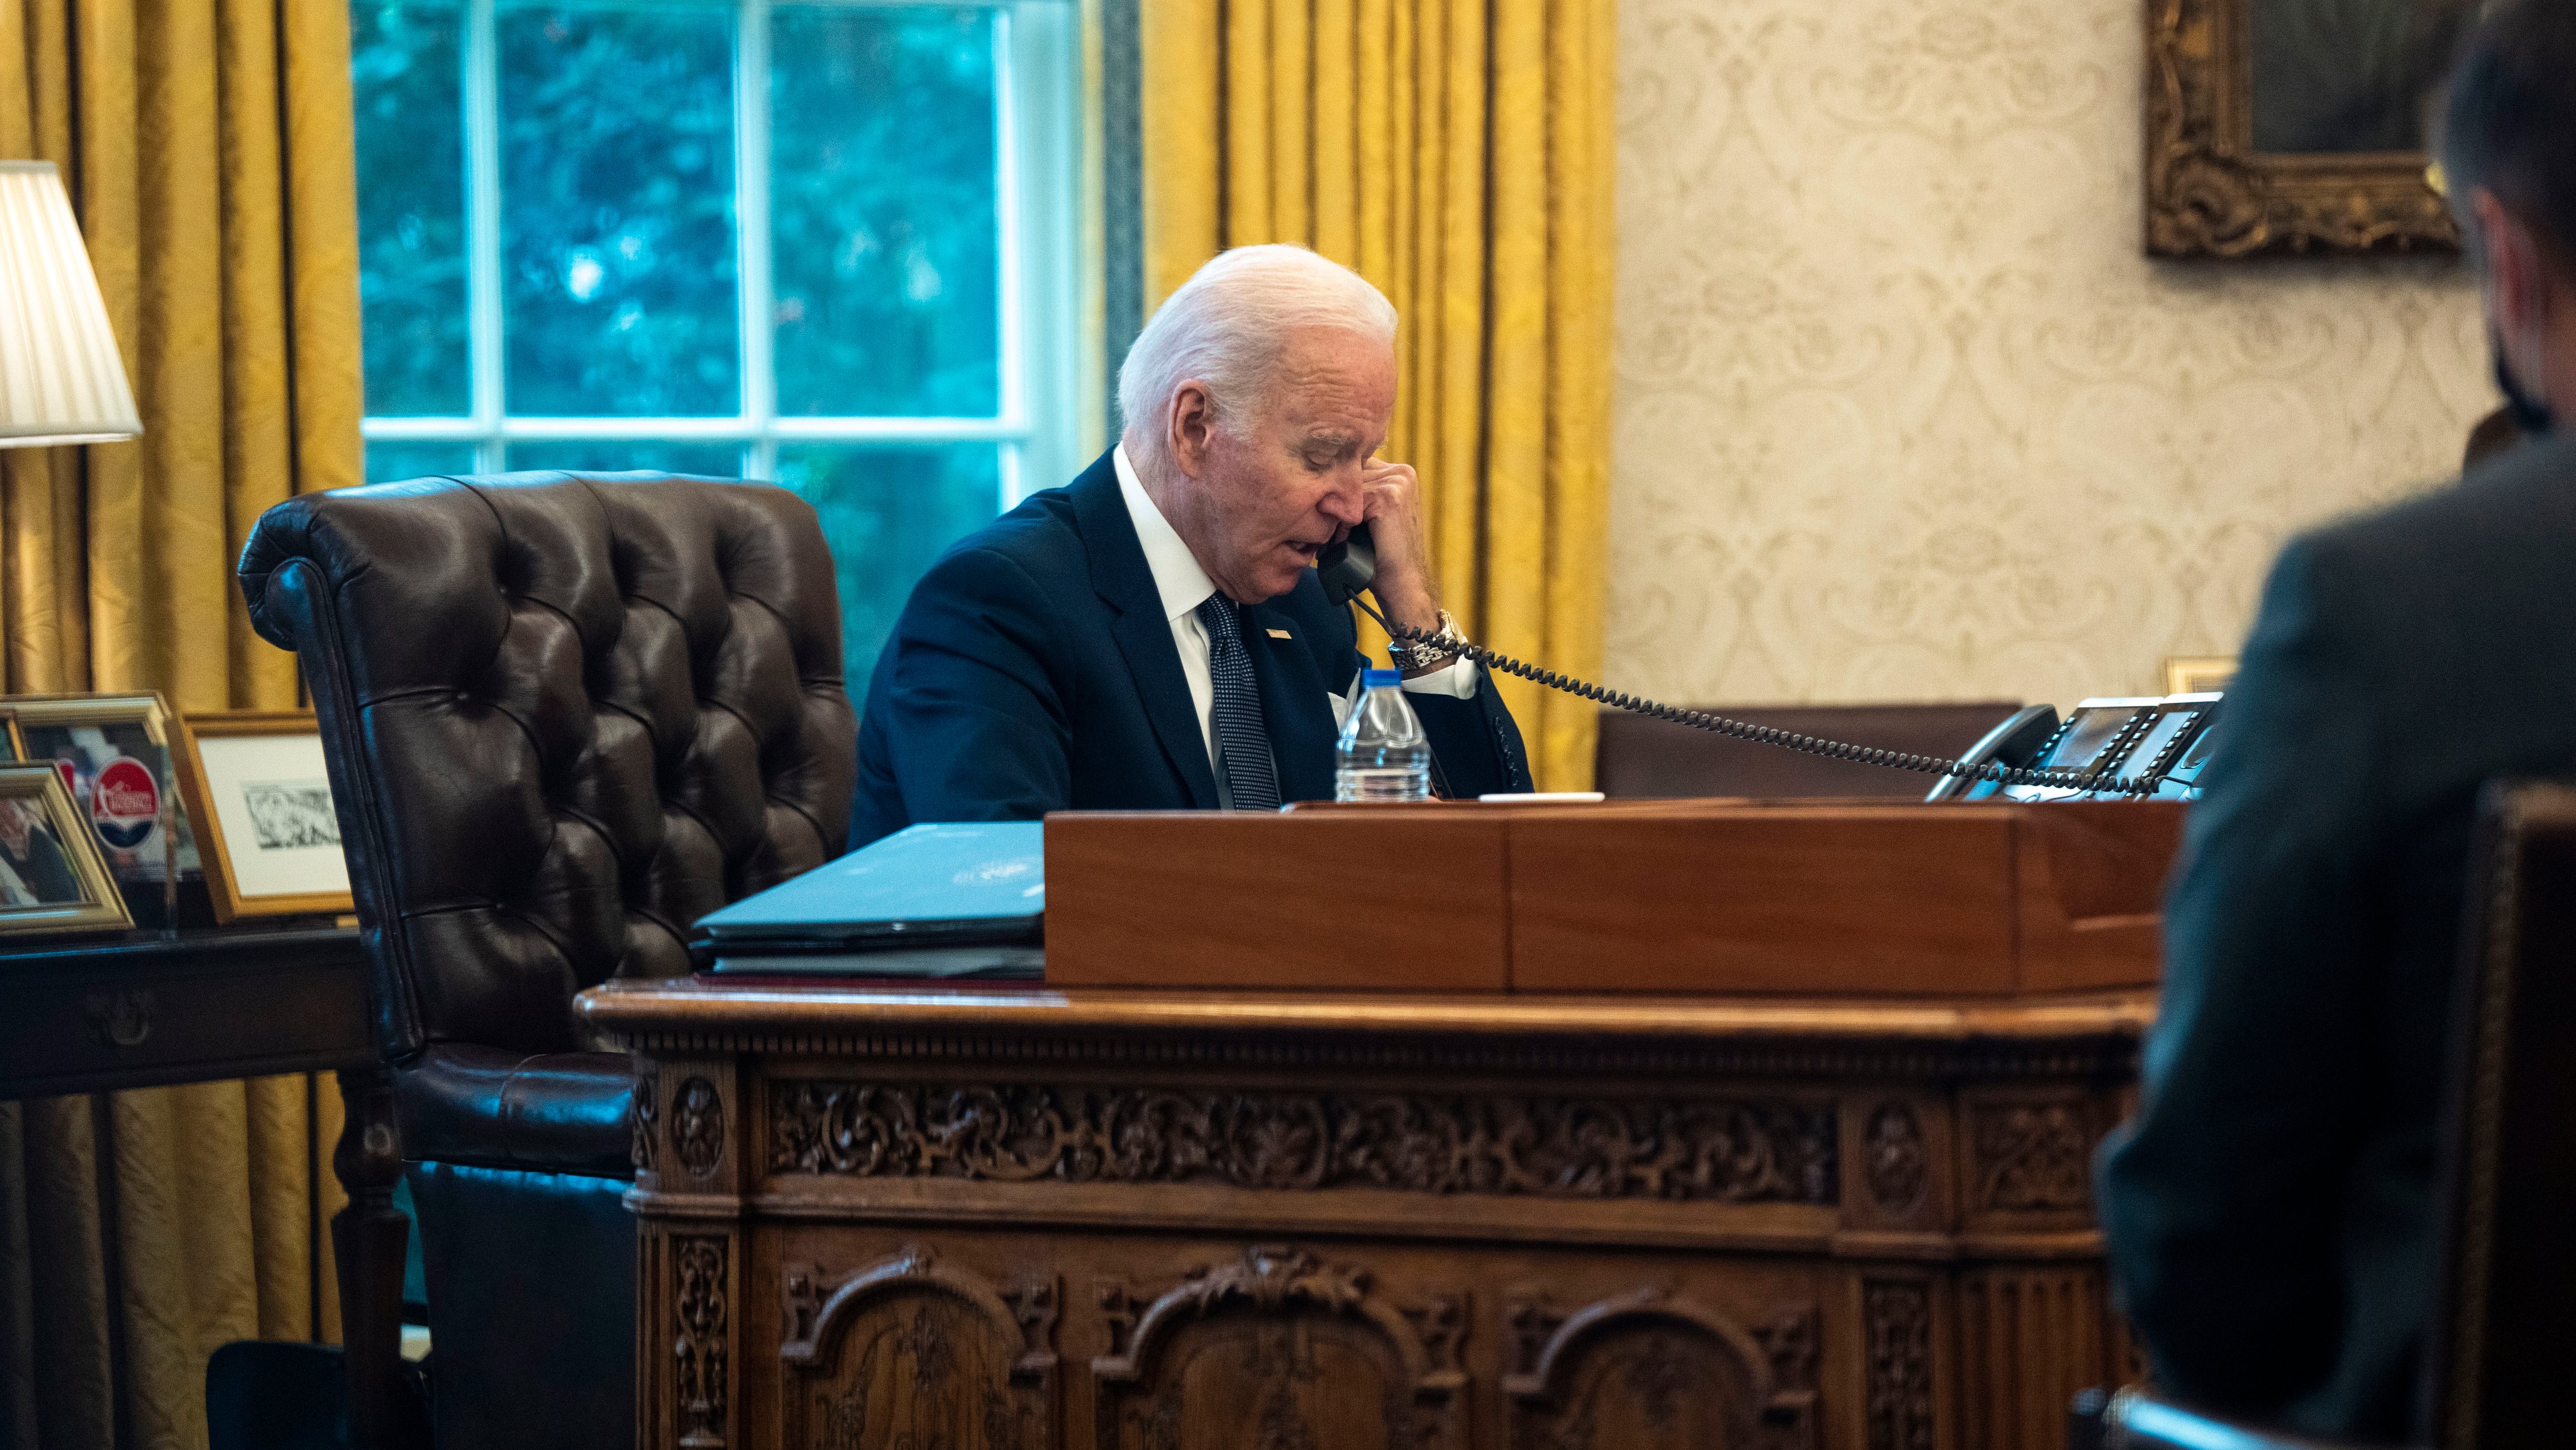 President Biden Speaks With Ukrainian President Zelensky In Oval Office Call